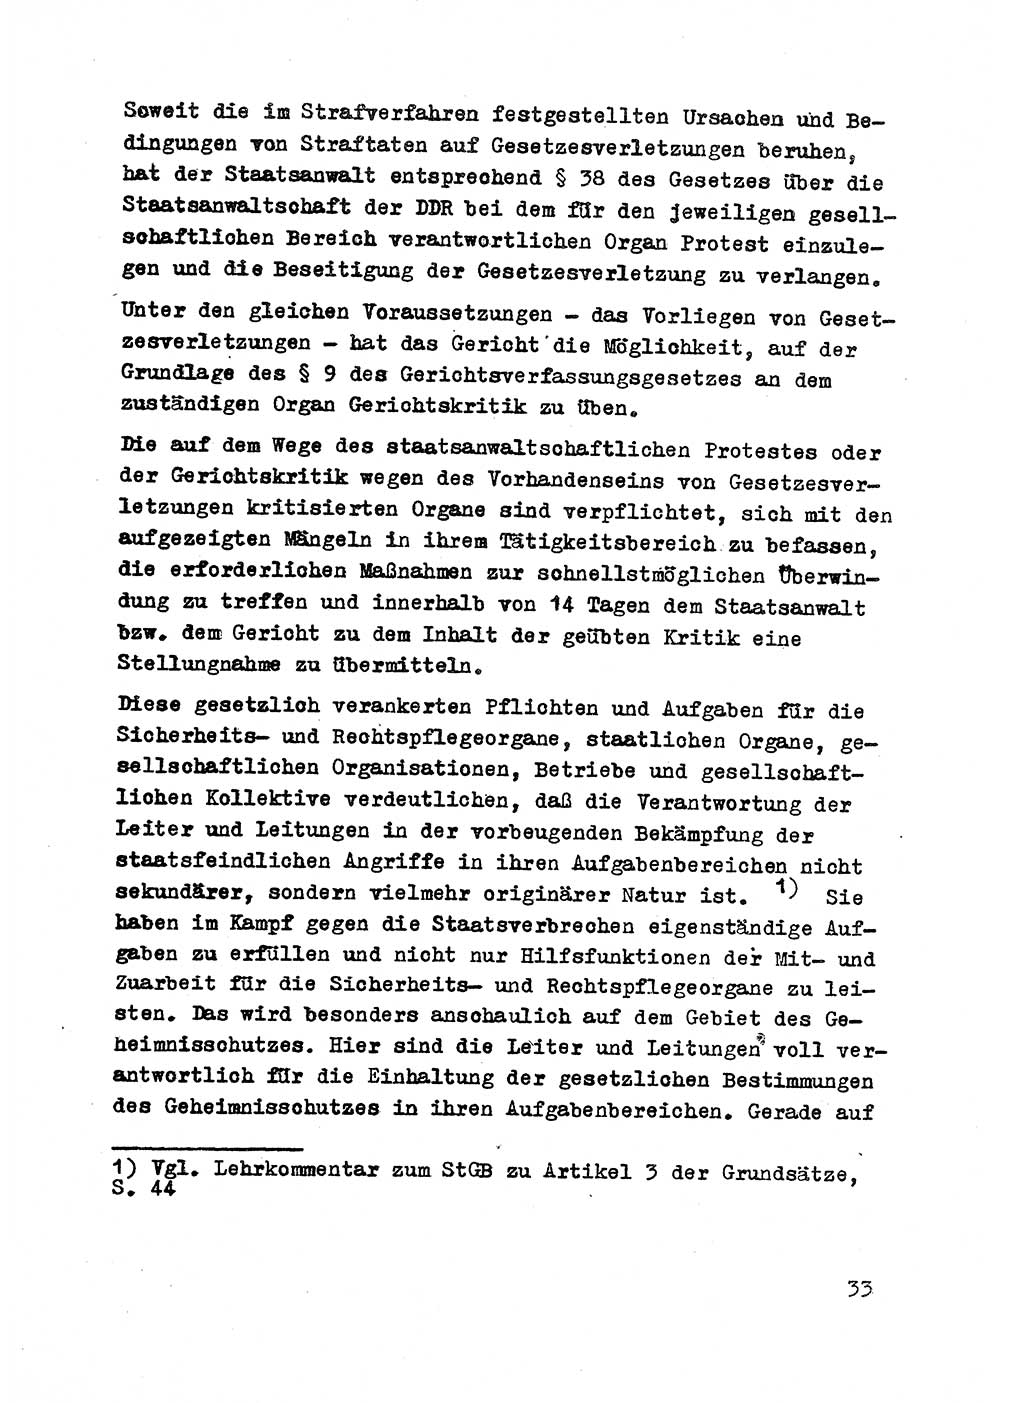 Strafrecht der DDR (Deutsche Demokratische Republik), Besonderer Teil, Lehrmaterial, Heft 2 1969, Seite 33 (Strafr. DDR BT Lehrmat. H. 2 1969, S. 33)